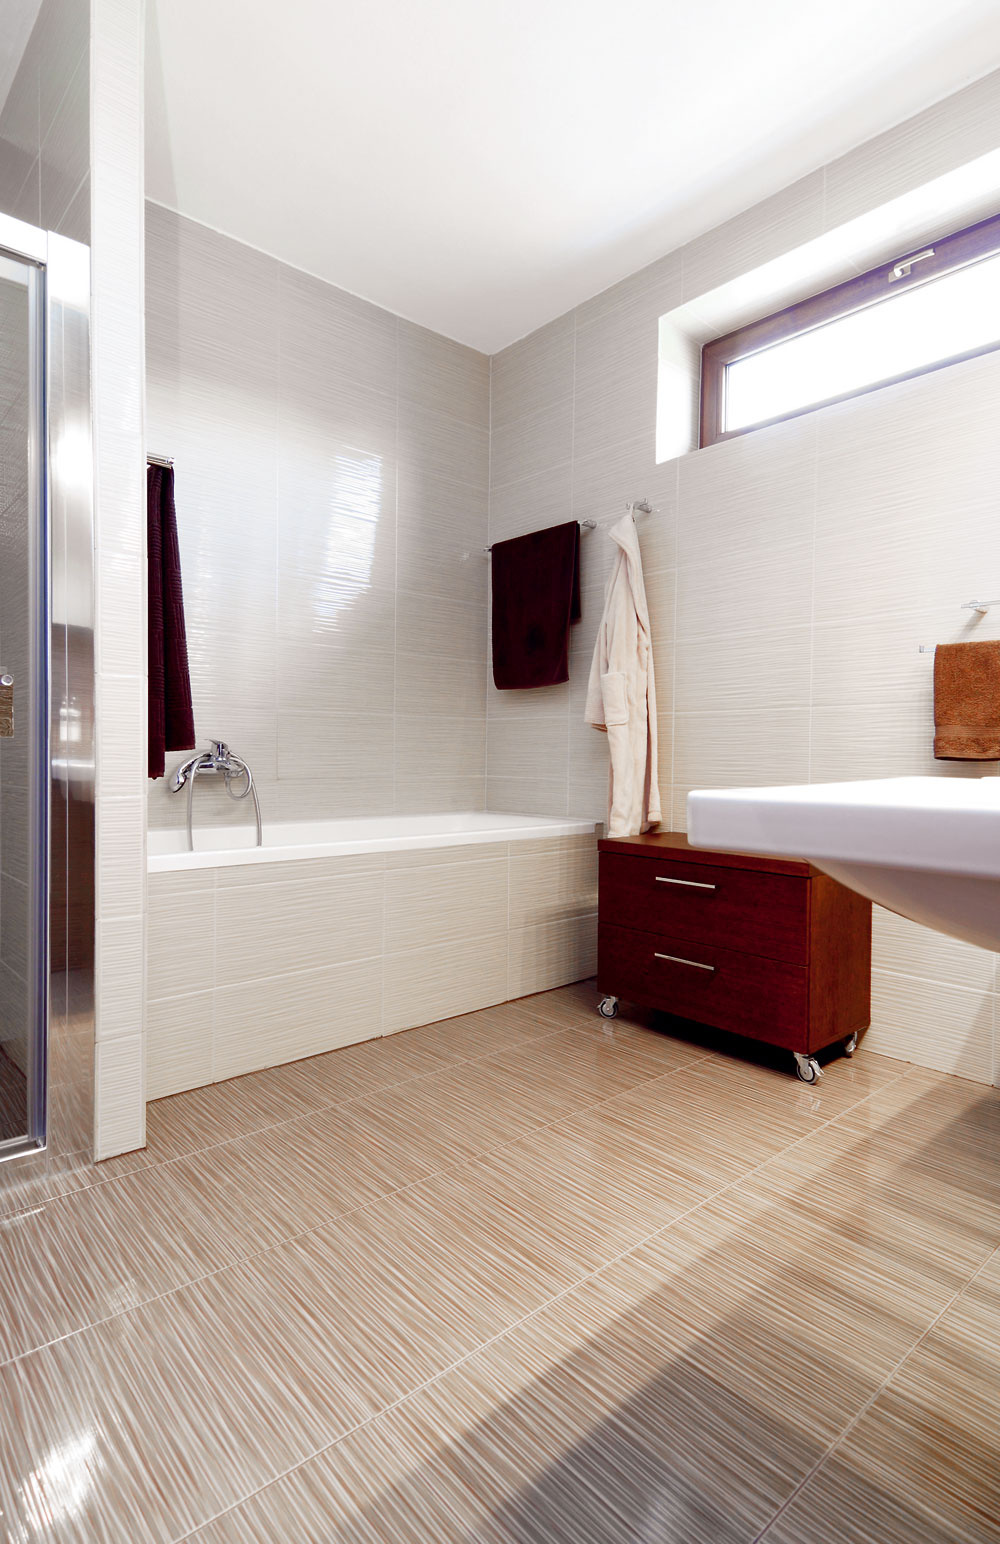 Obe kúpeľne sú zariadené striedmo a elegantne.